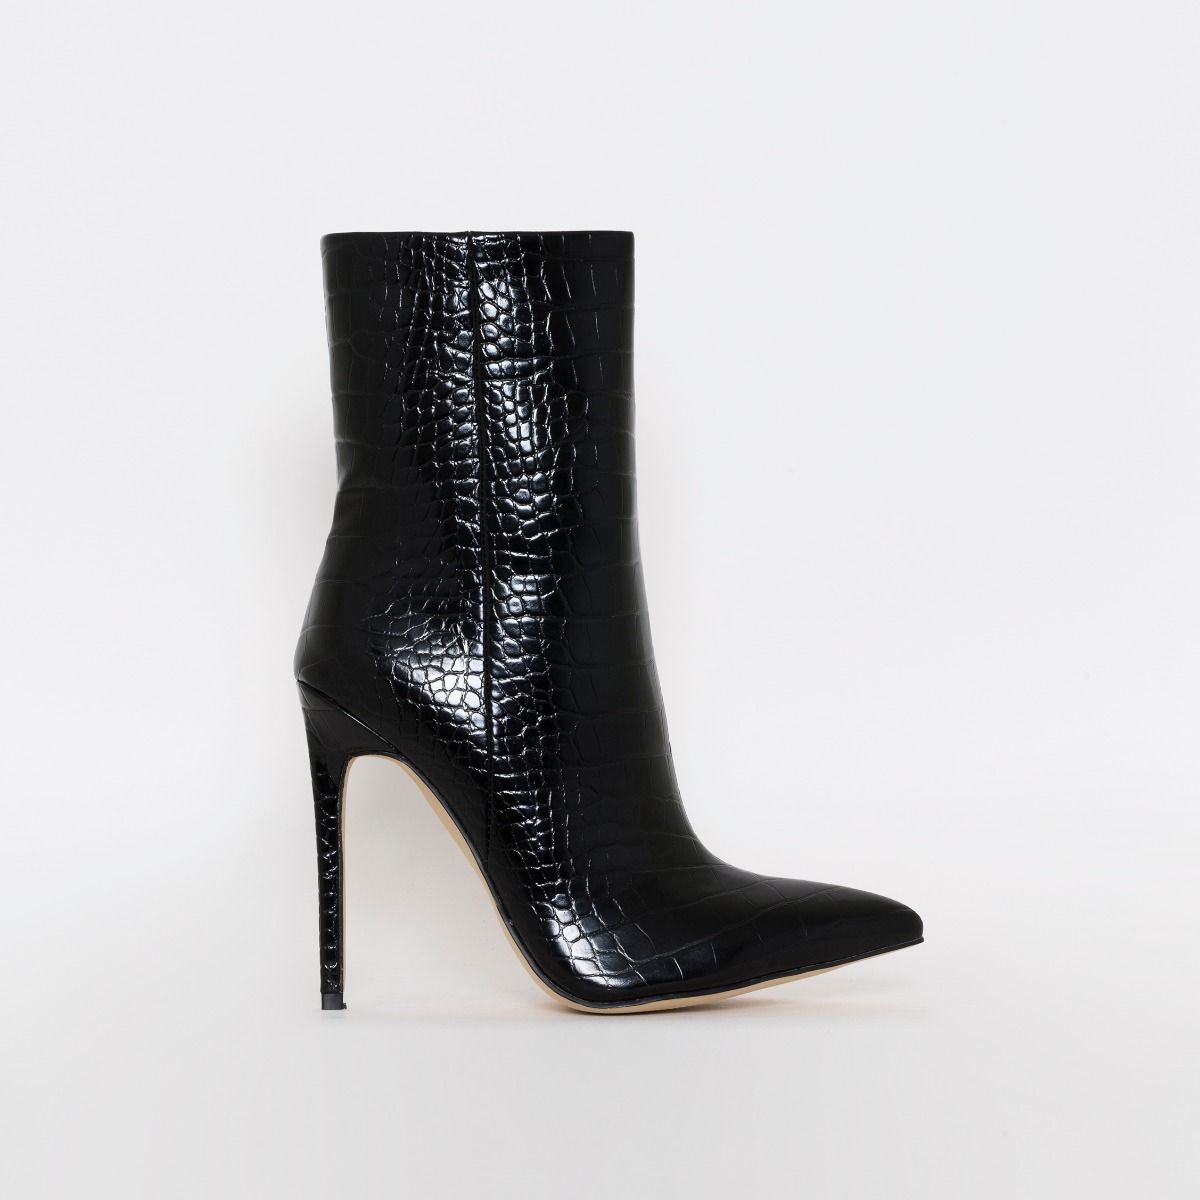 Melia Black Croc Print Stiletto Ankle Boots